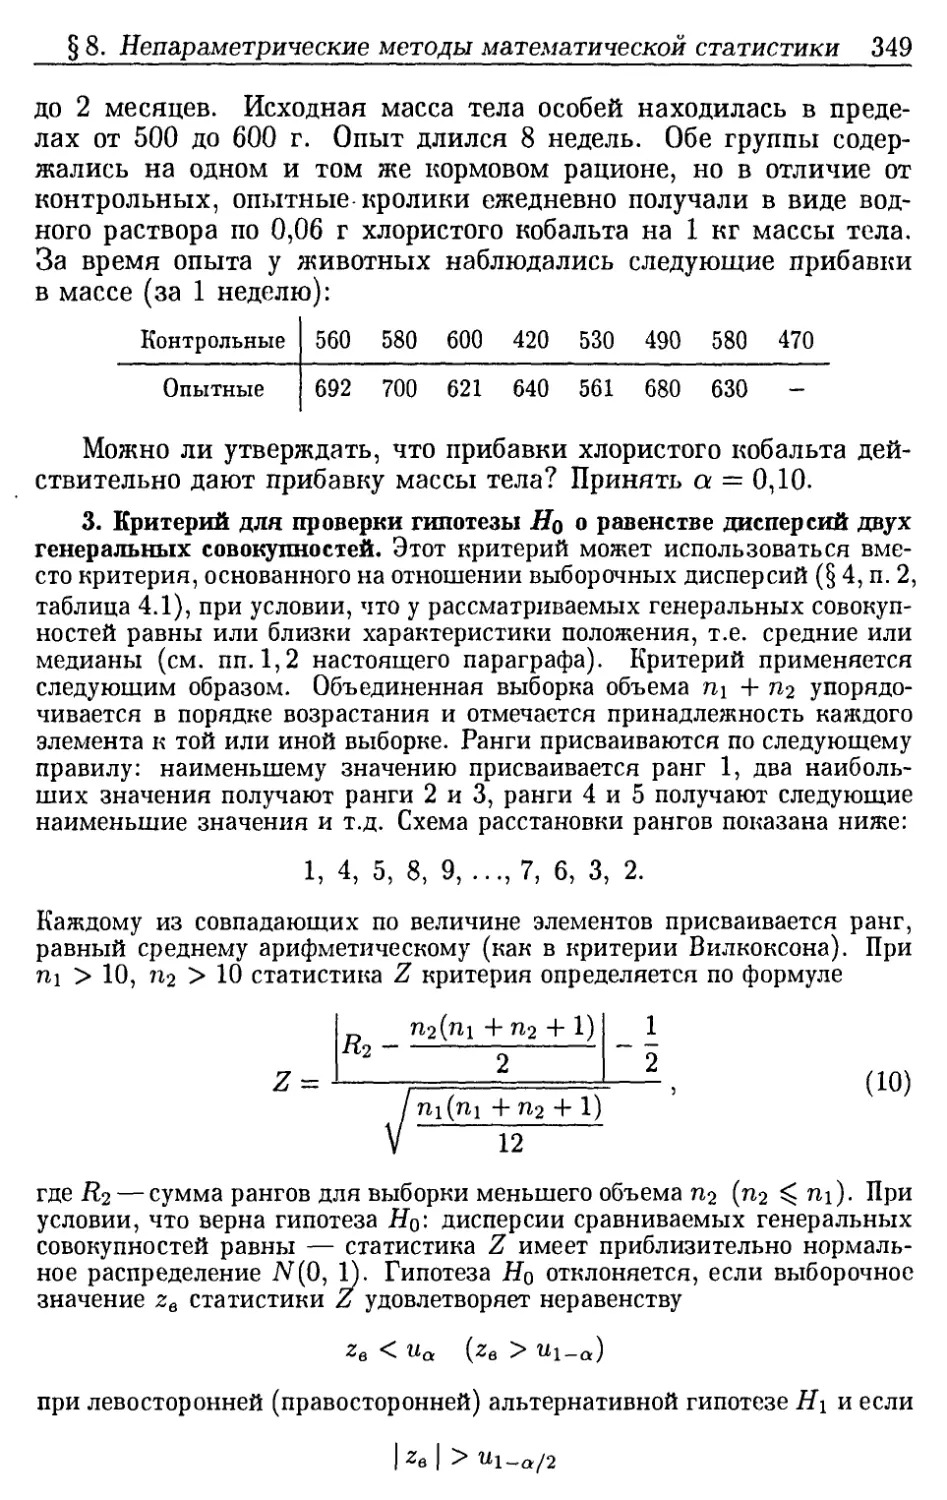 3. Критерий для проверки гипотезы H0 о равенстве дисперсий двух генеральных совокупностей